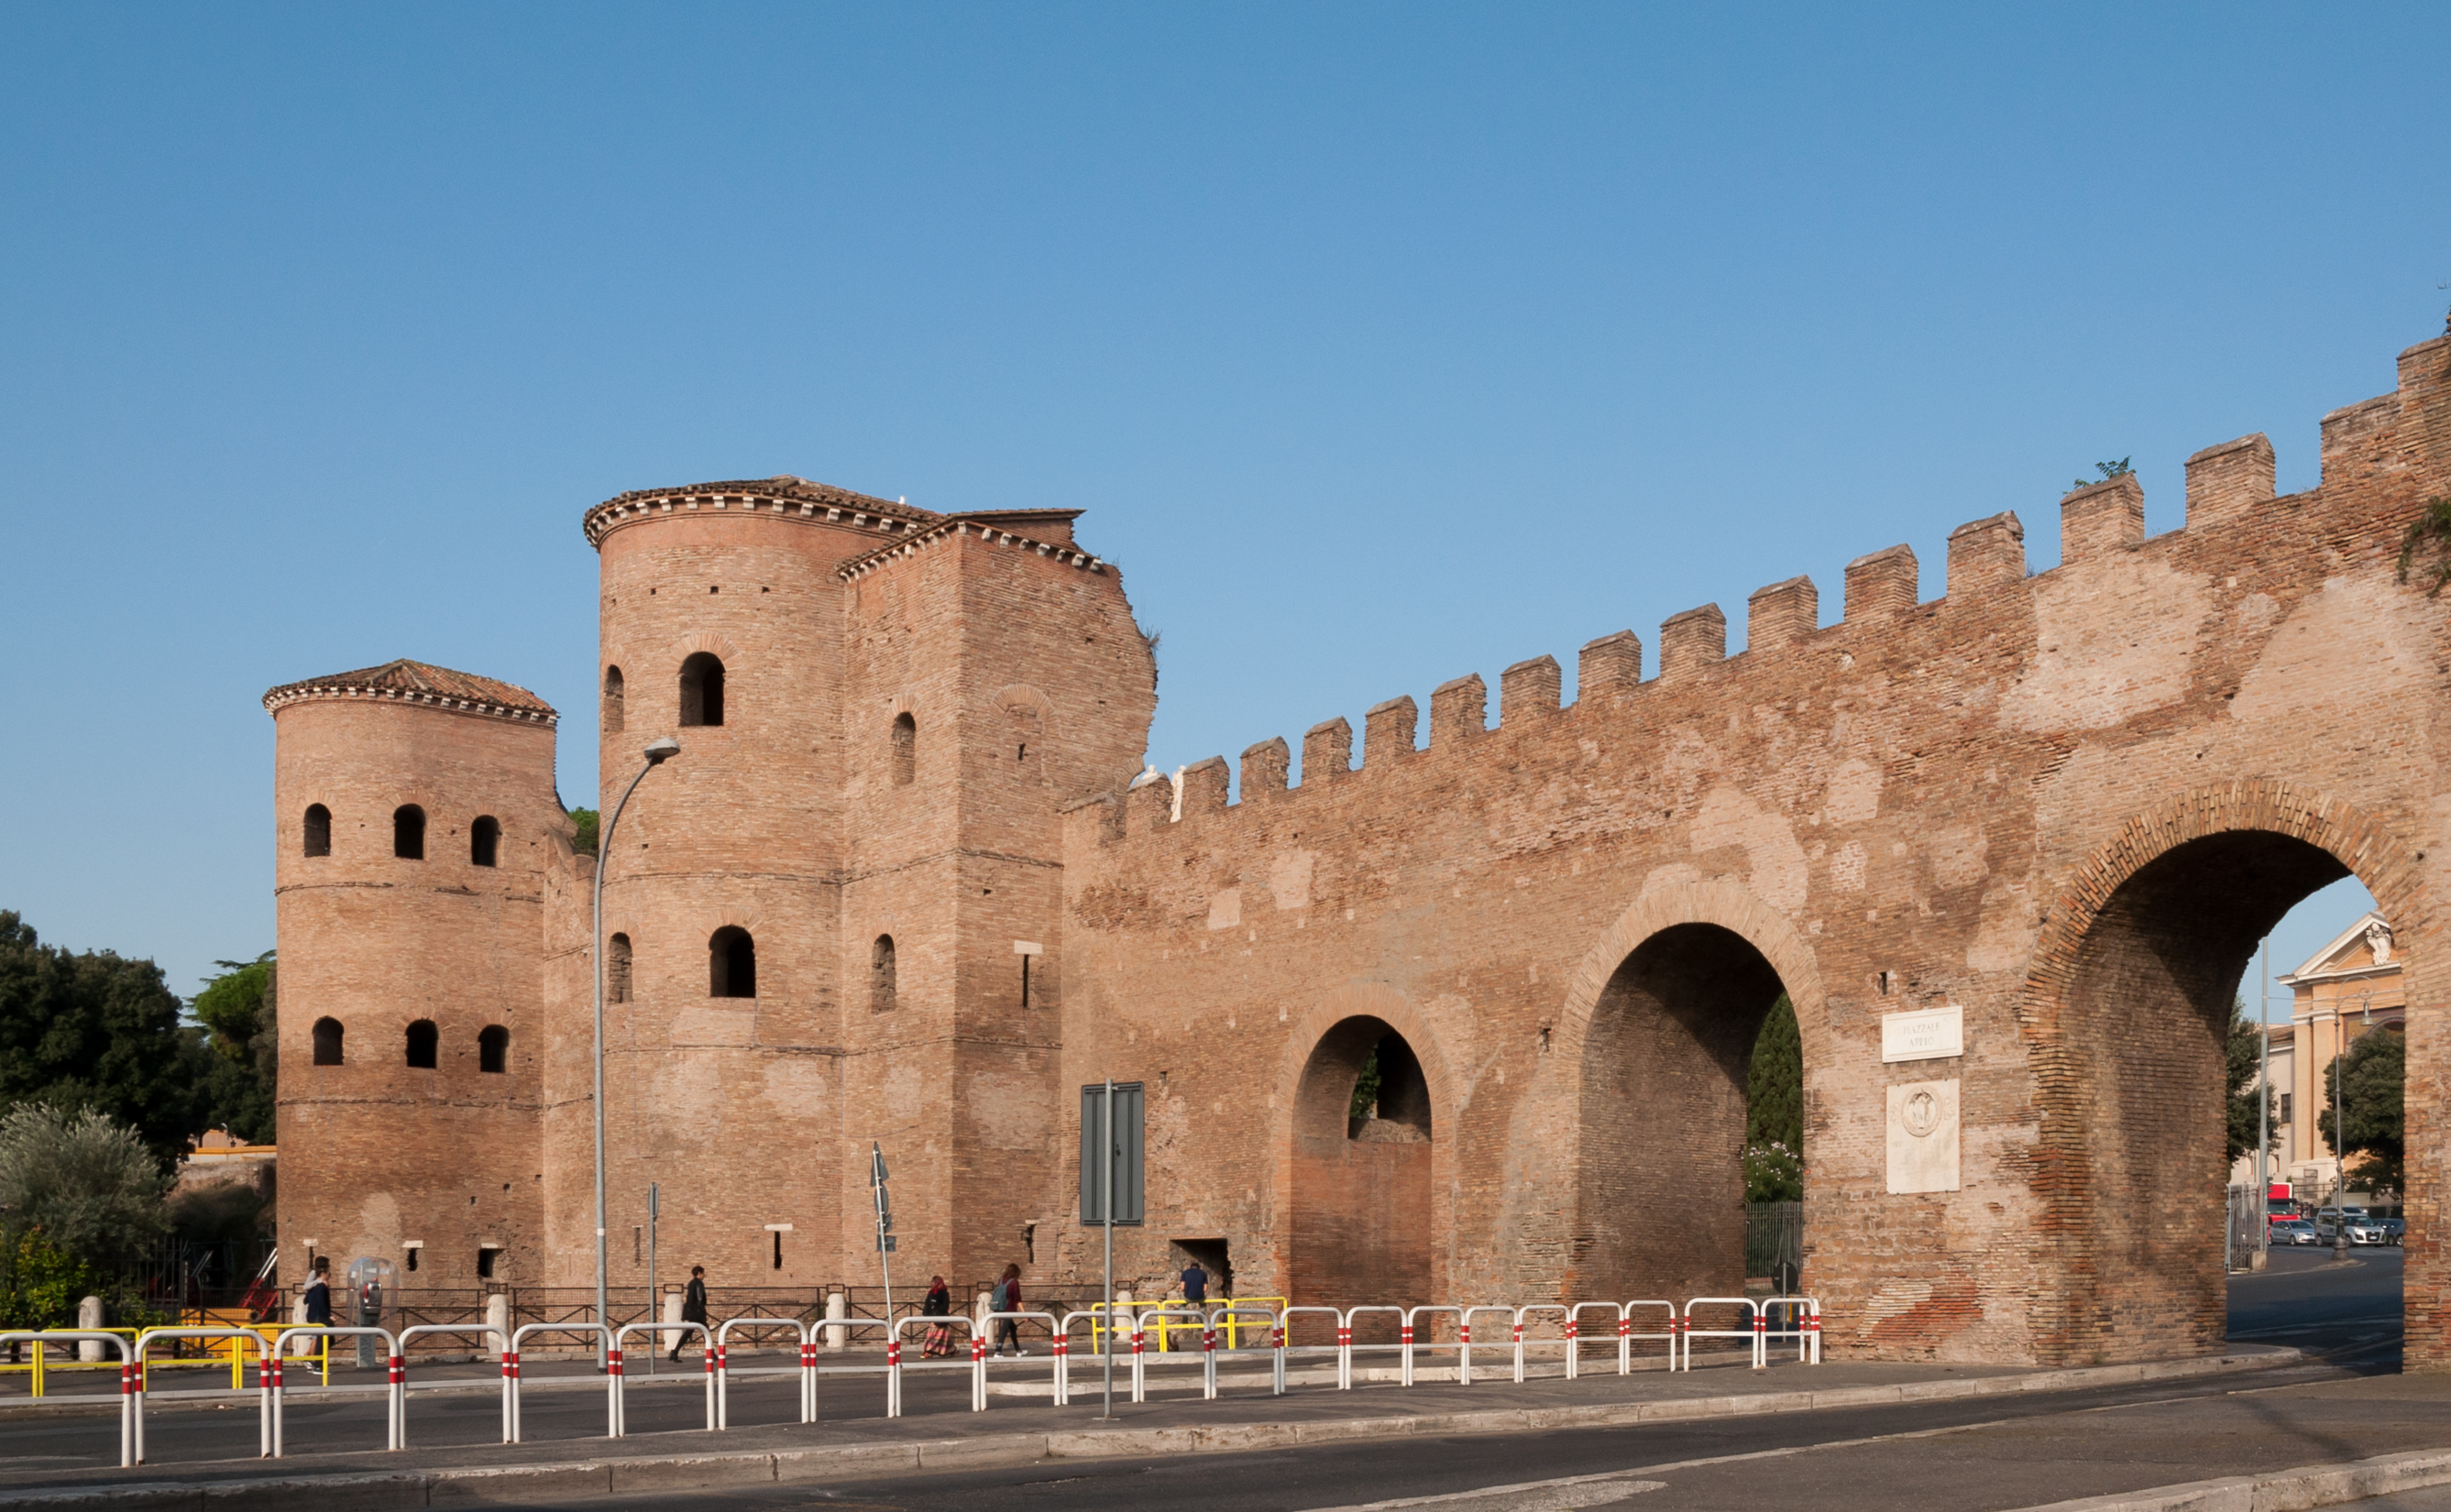 Aurelian Walls - Porta Asinaria